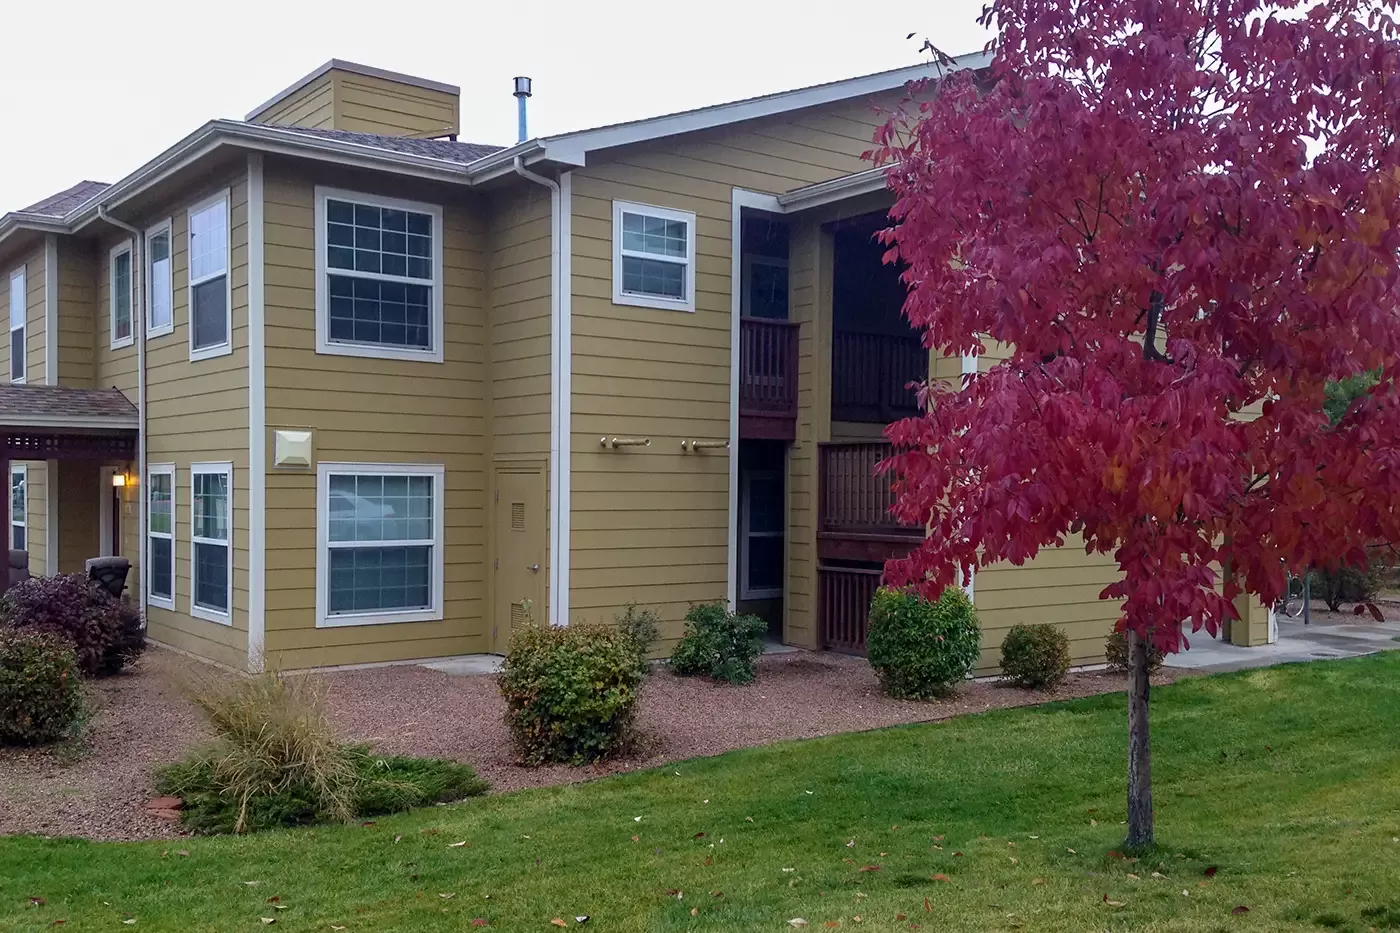 Photo of Arbor Vista apartments in Grand Junction, Colorado